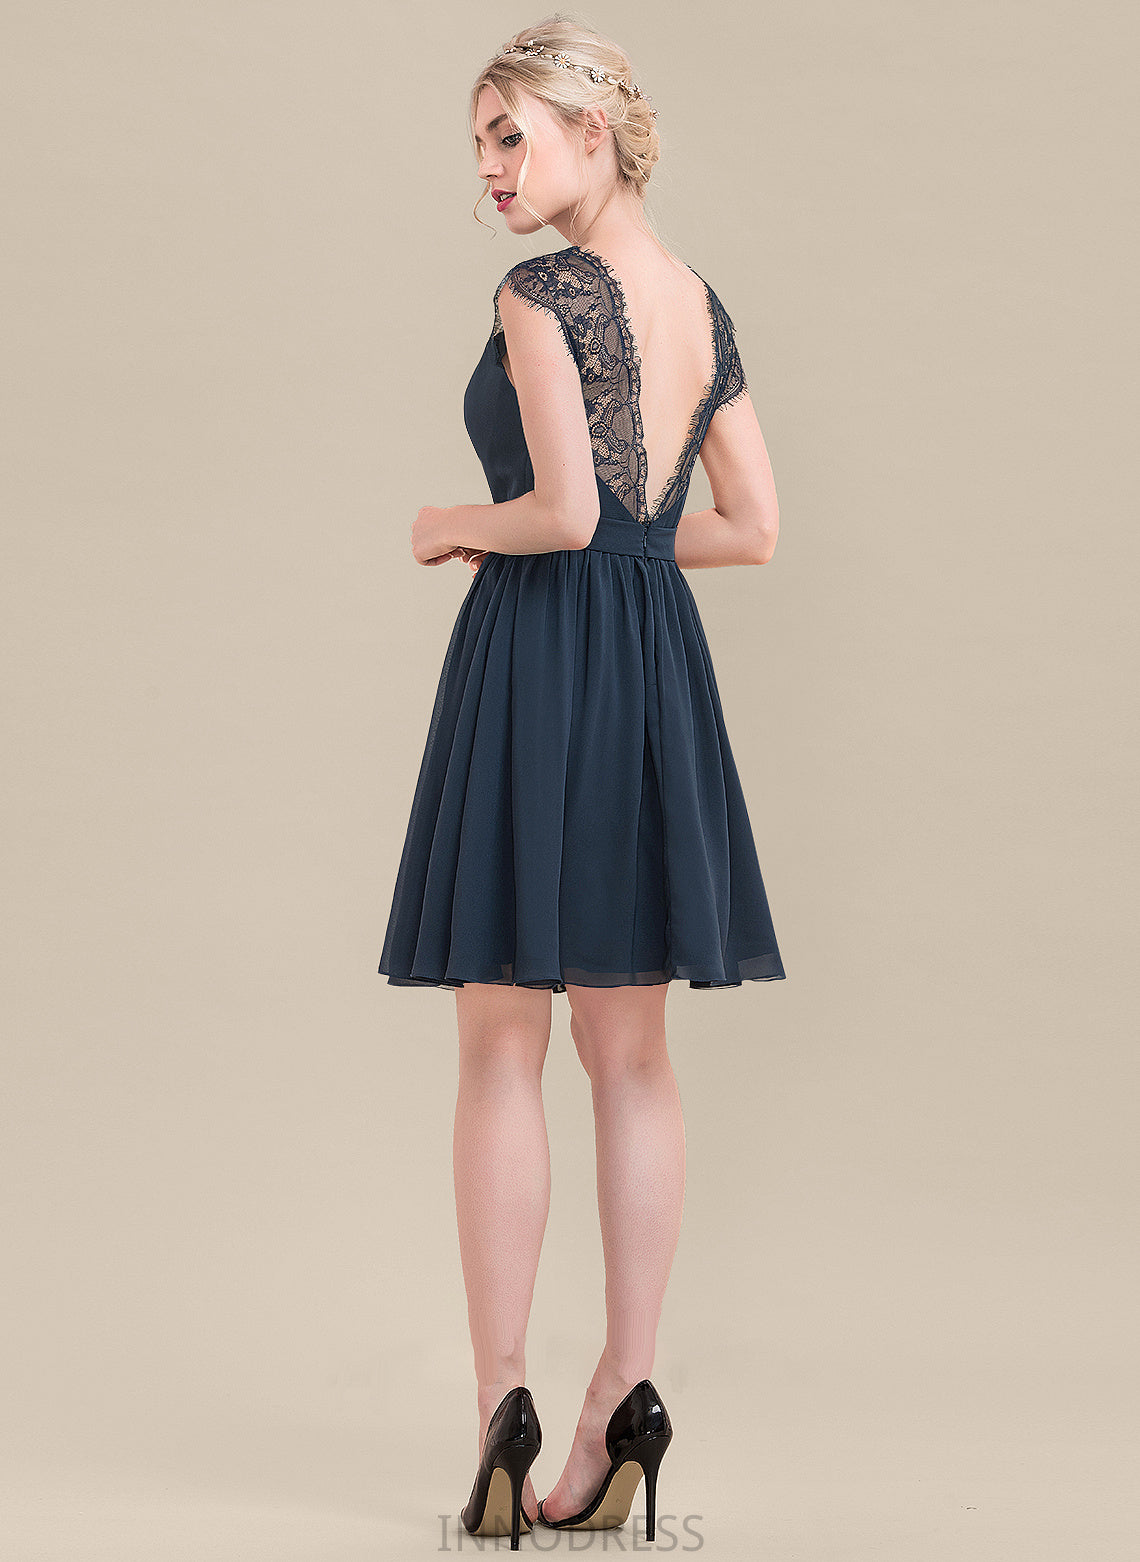 V-neck Neckline Knee-Length A-Line Straps Lace Length Fabric Silhouette Stephanie High Low Natural Waist